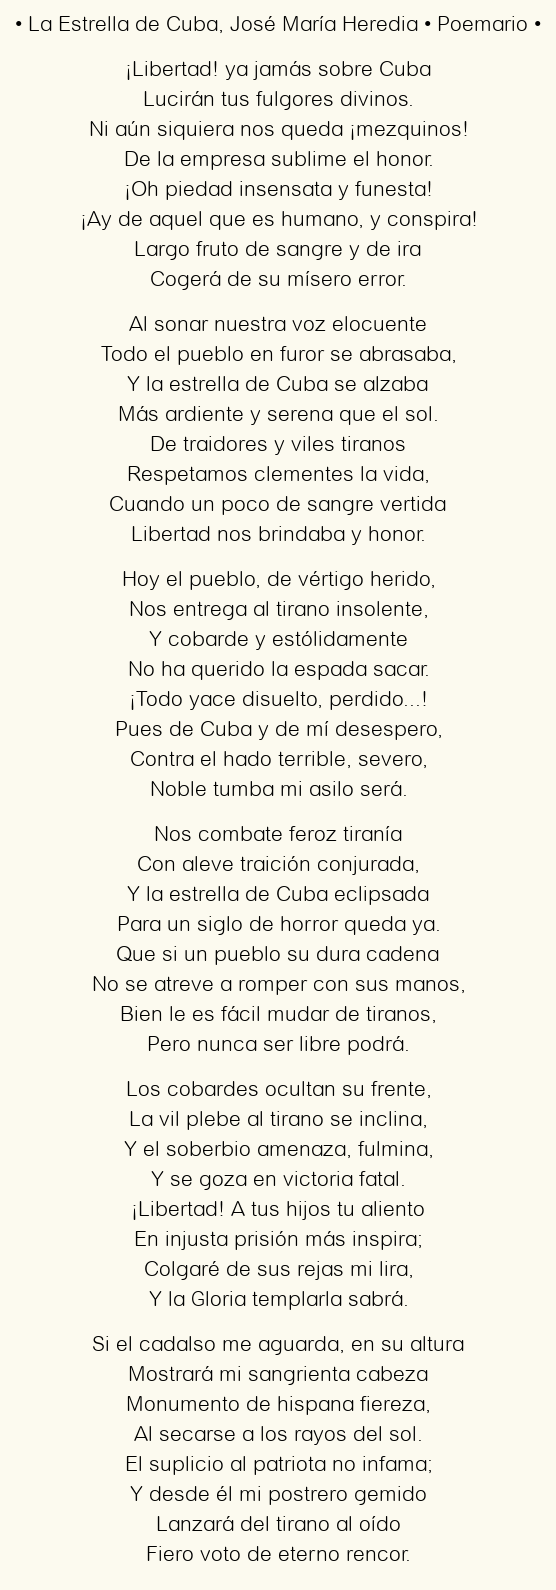 La Estrella de Cuba, por José María Heredia